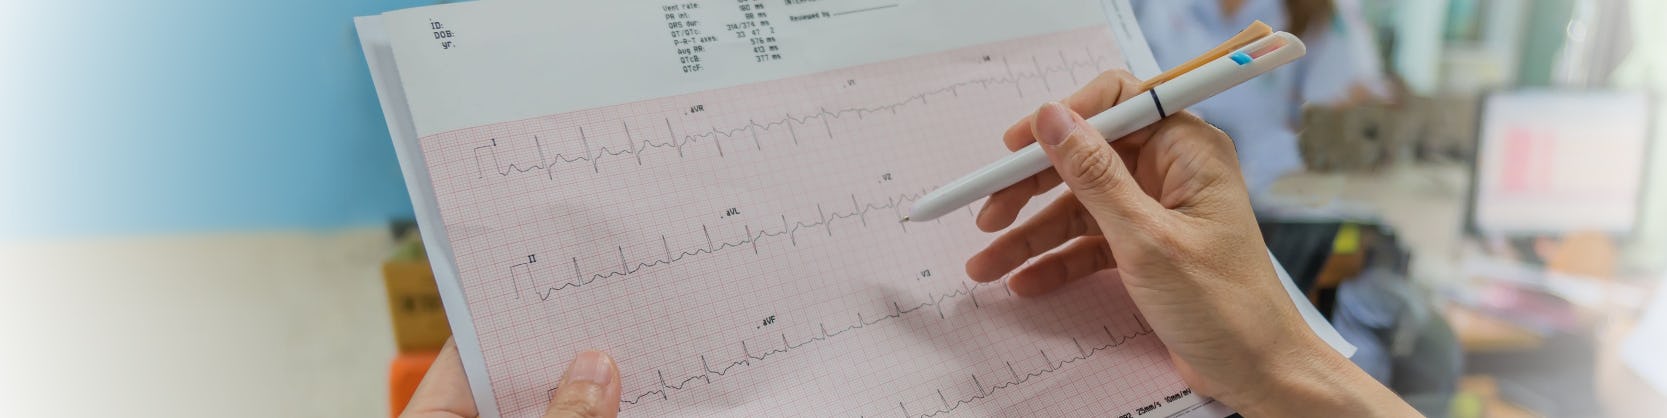 Ce se întâmplă în timpul consultației cardiologice?